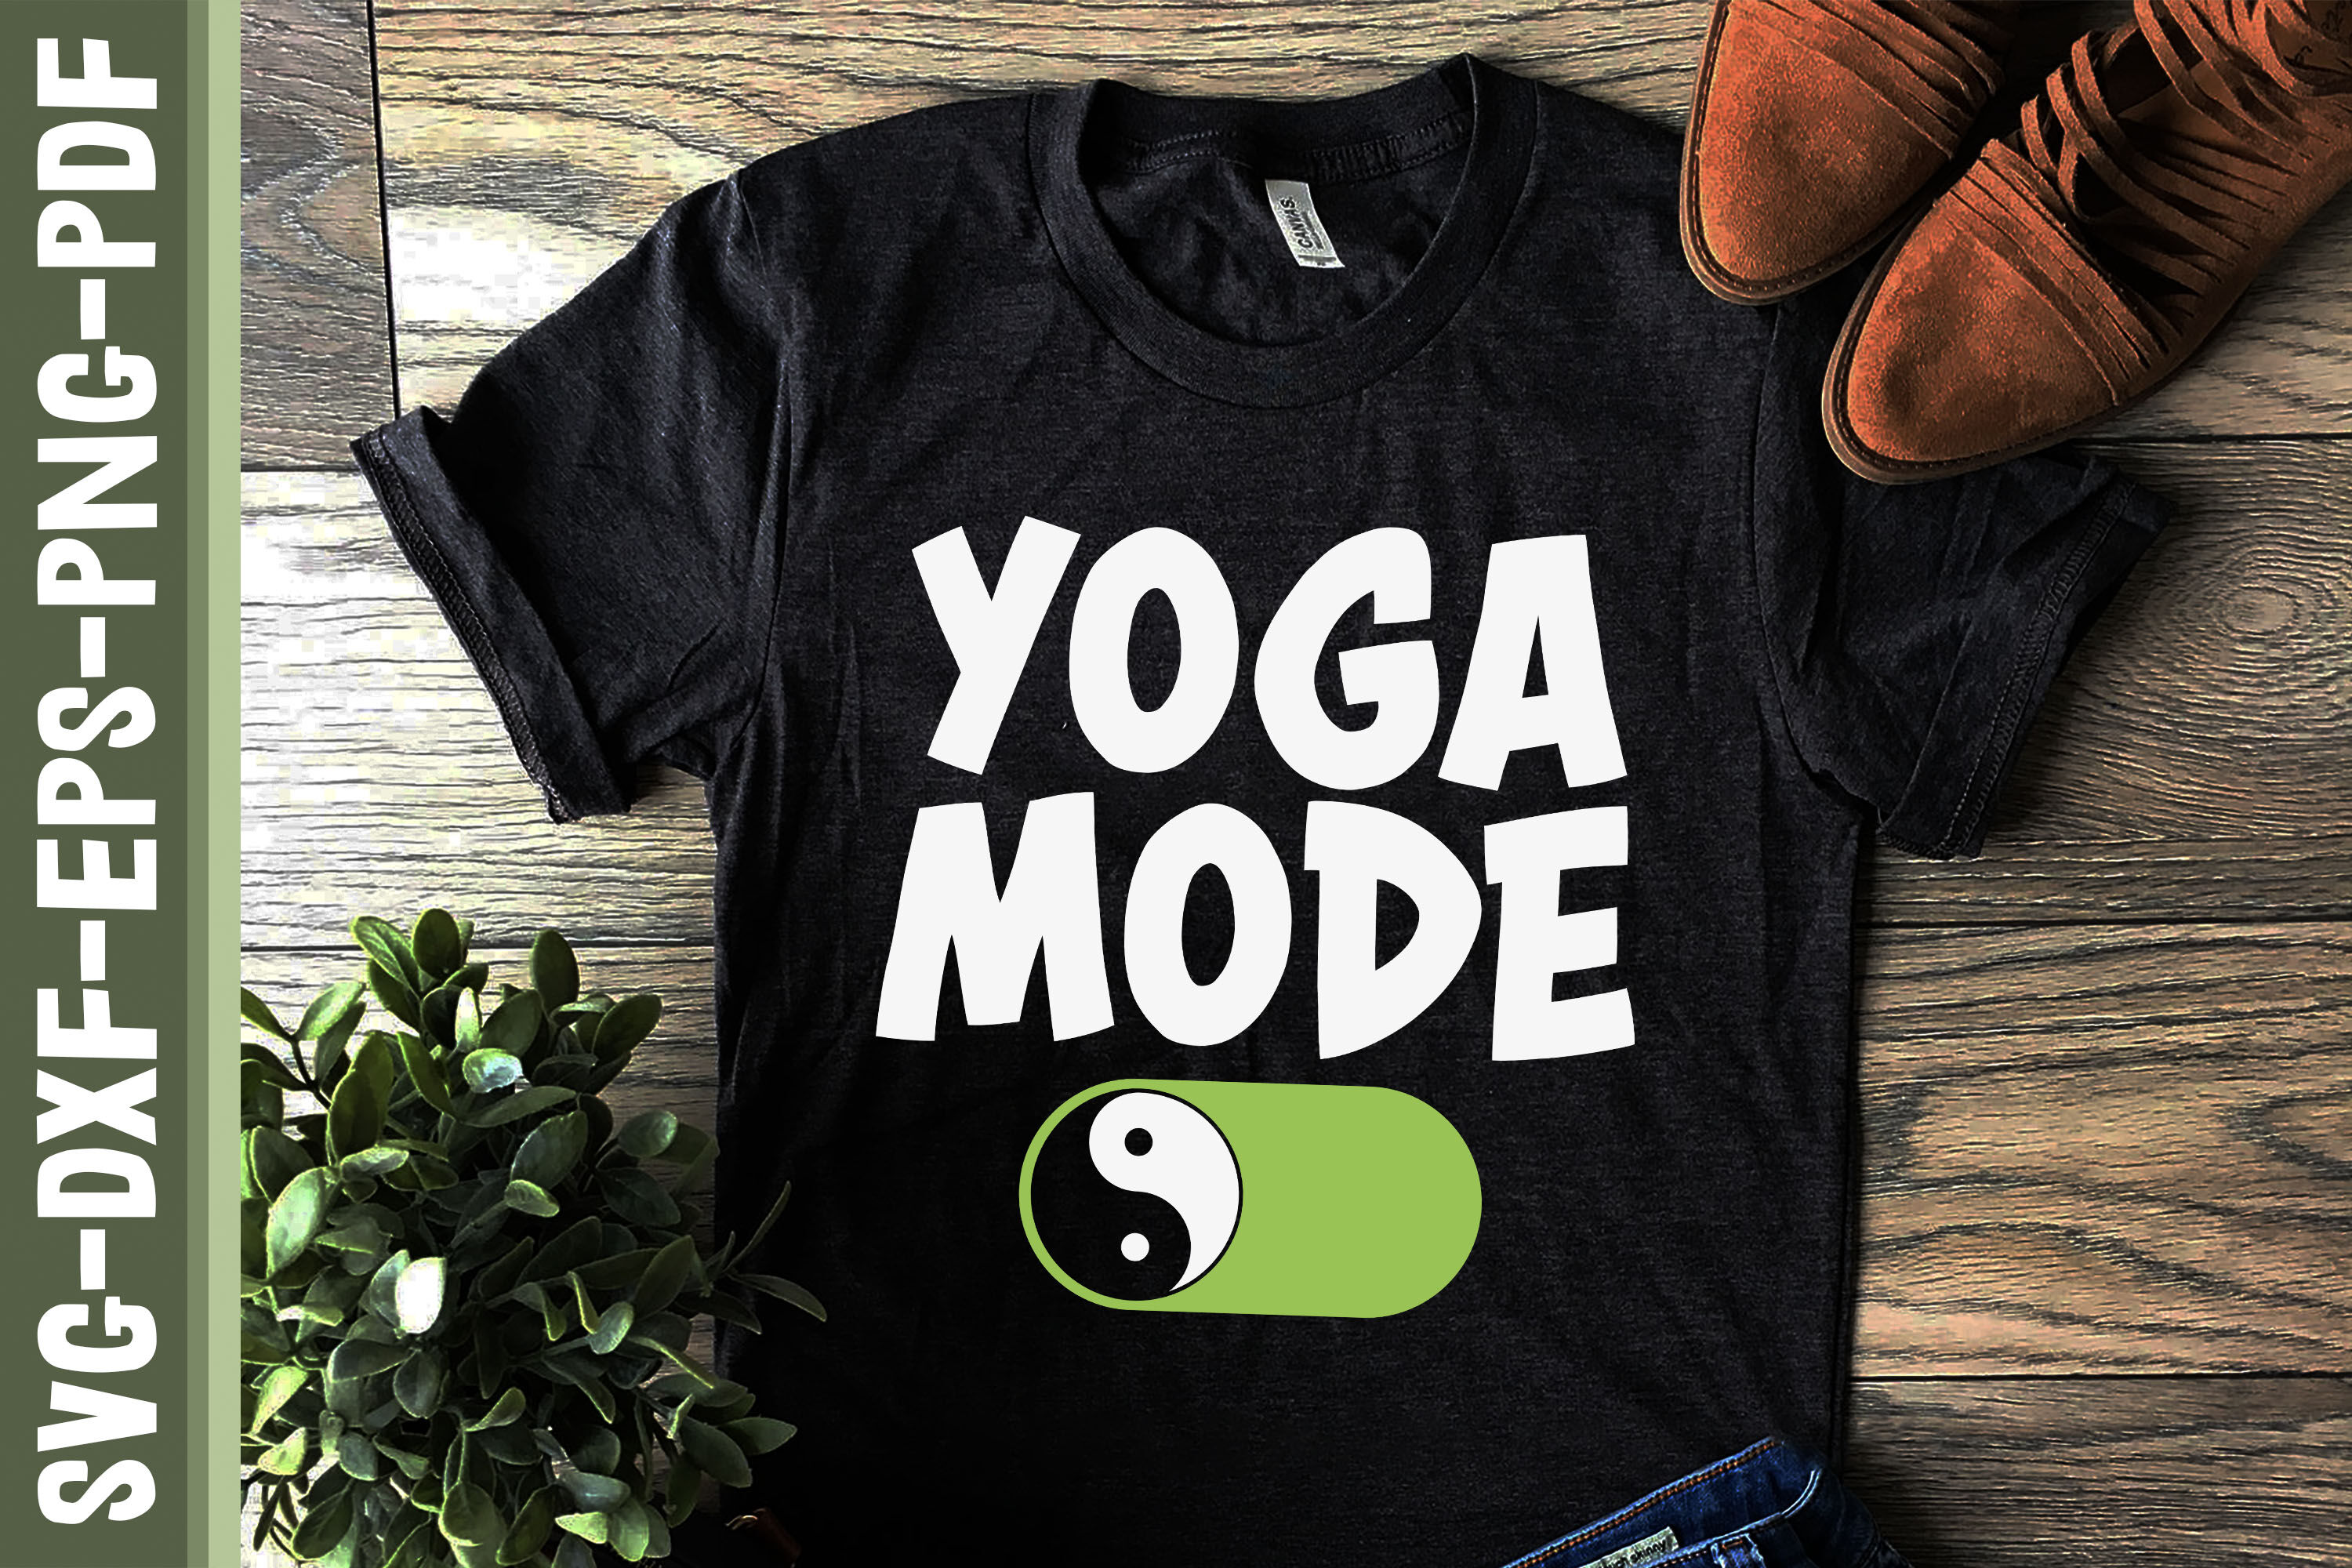 Yoga Mode On Yin Yang Meditation By JobeAub | TheHungryJPEG